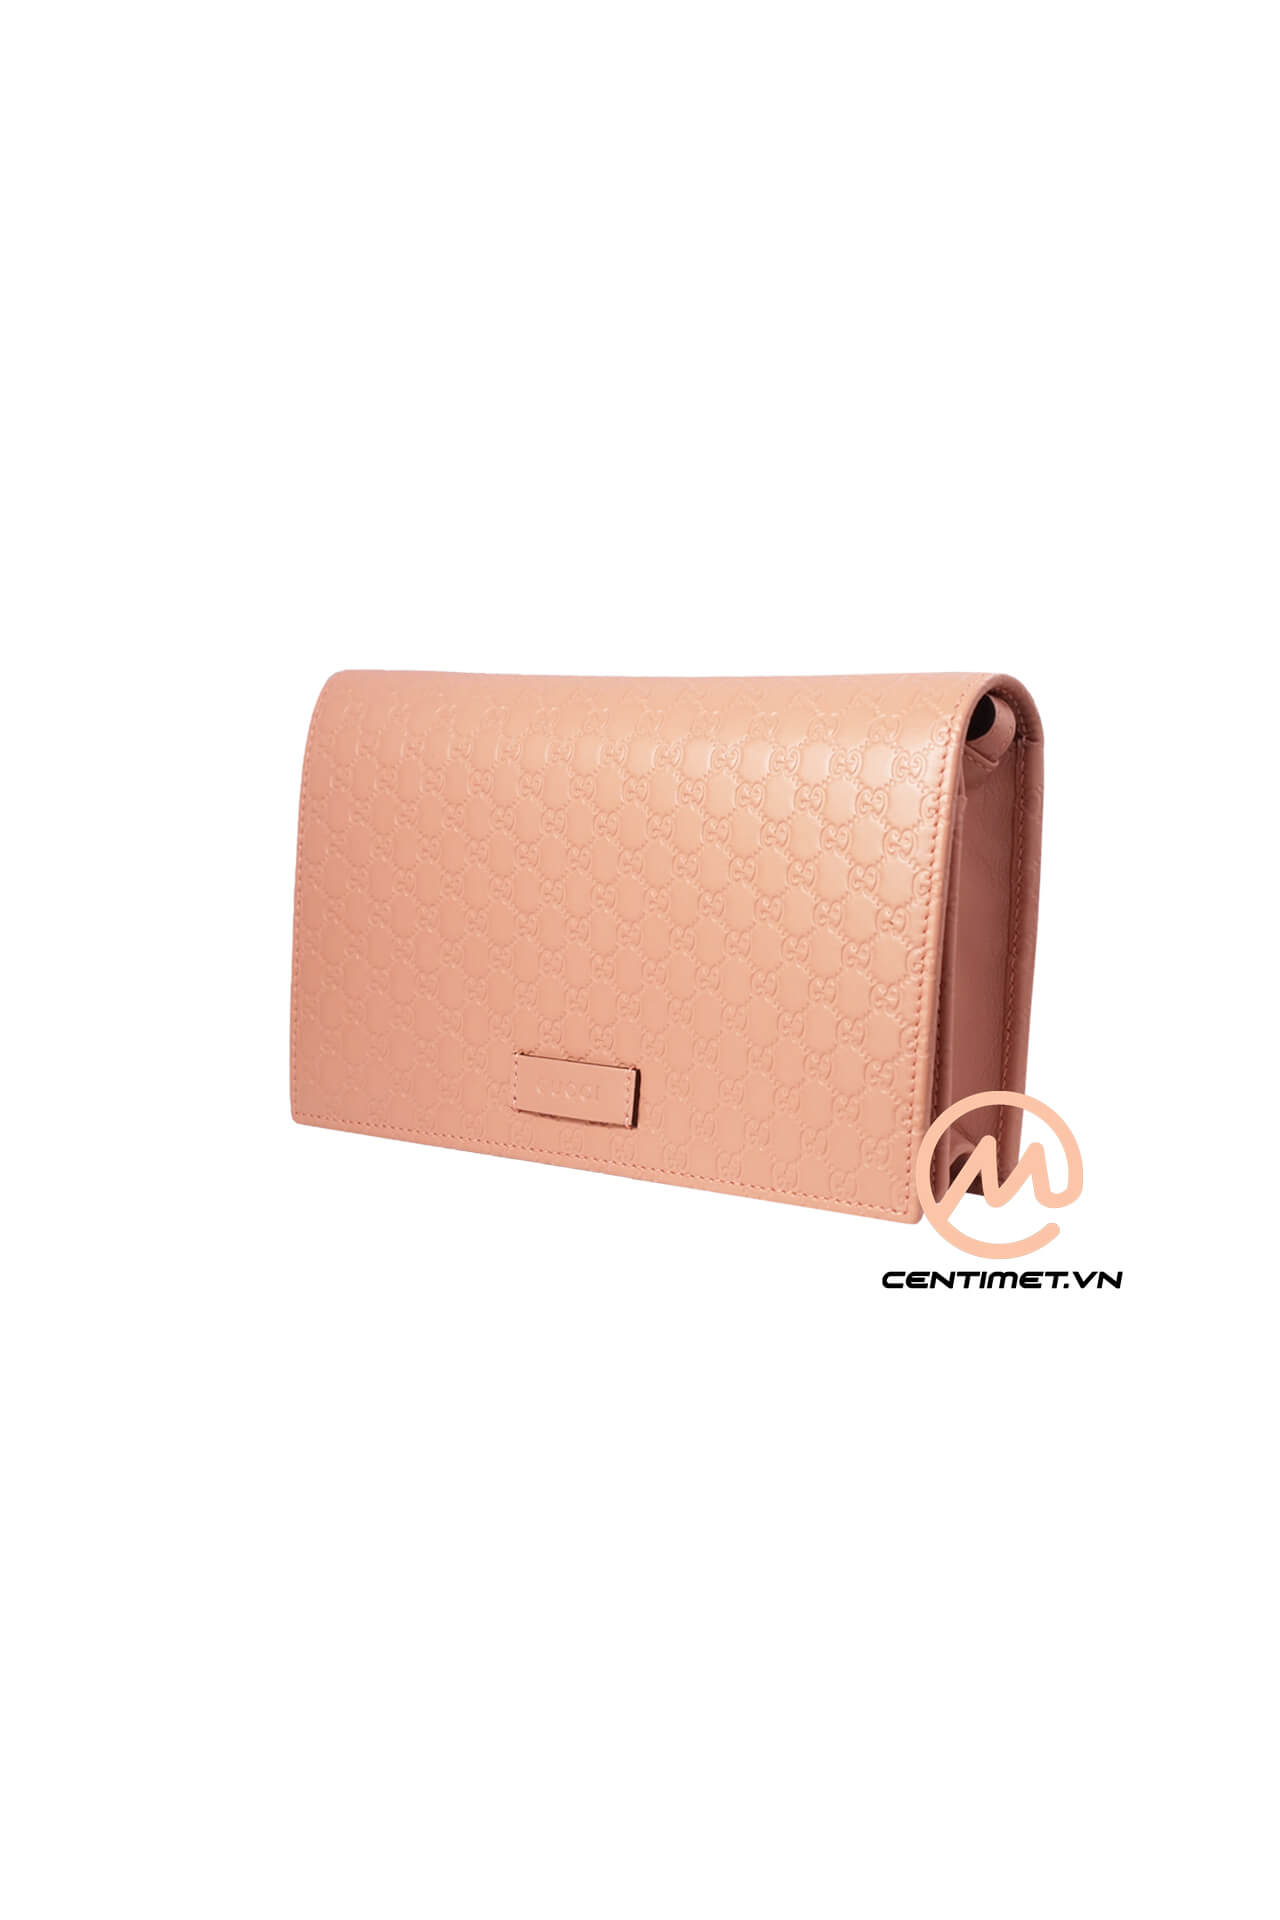 Tui Gucci Guccissima Leather Pink Bag-6